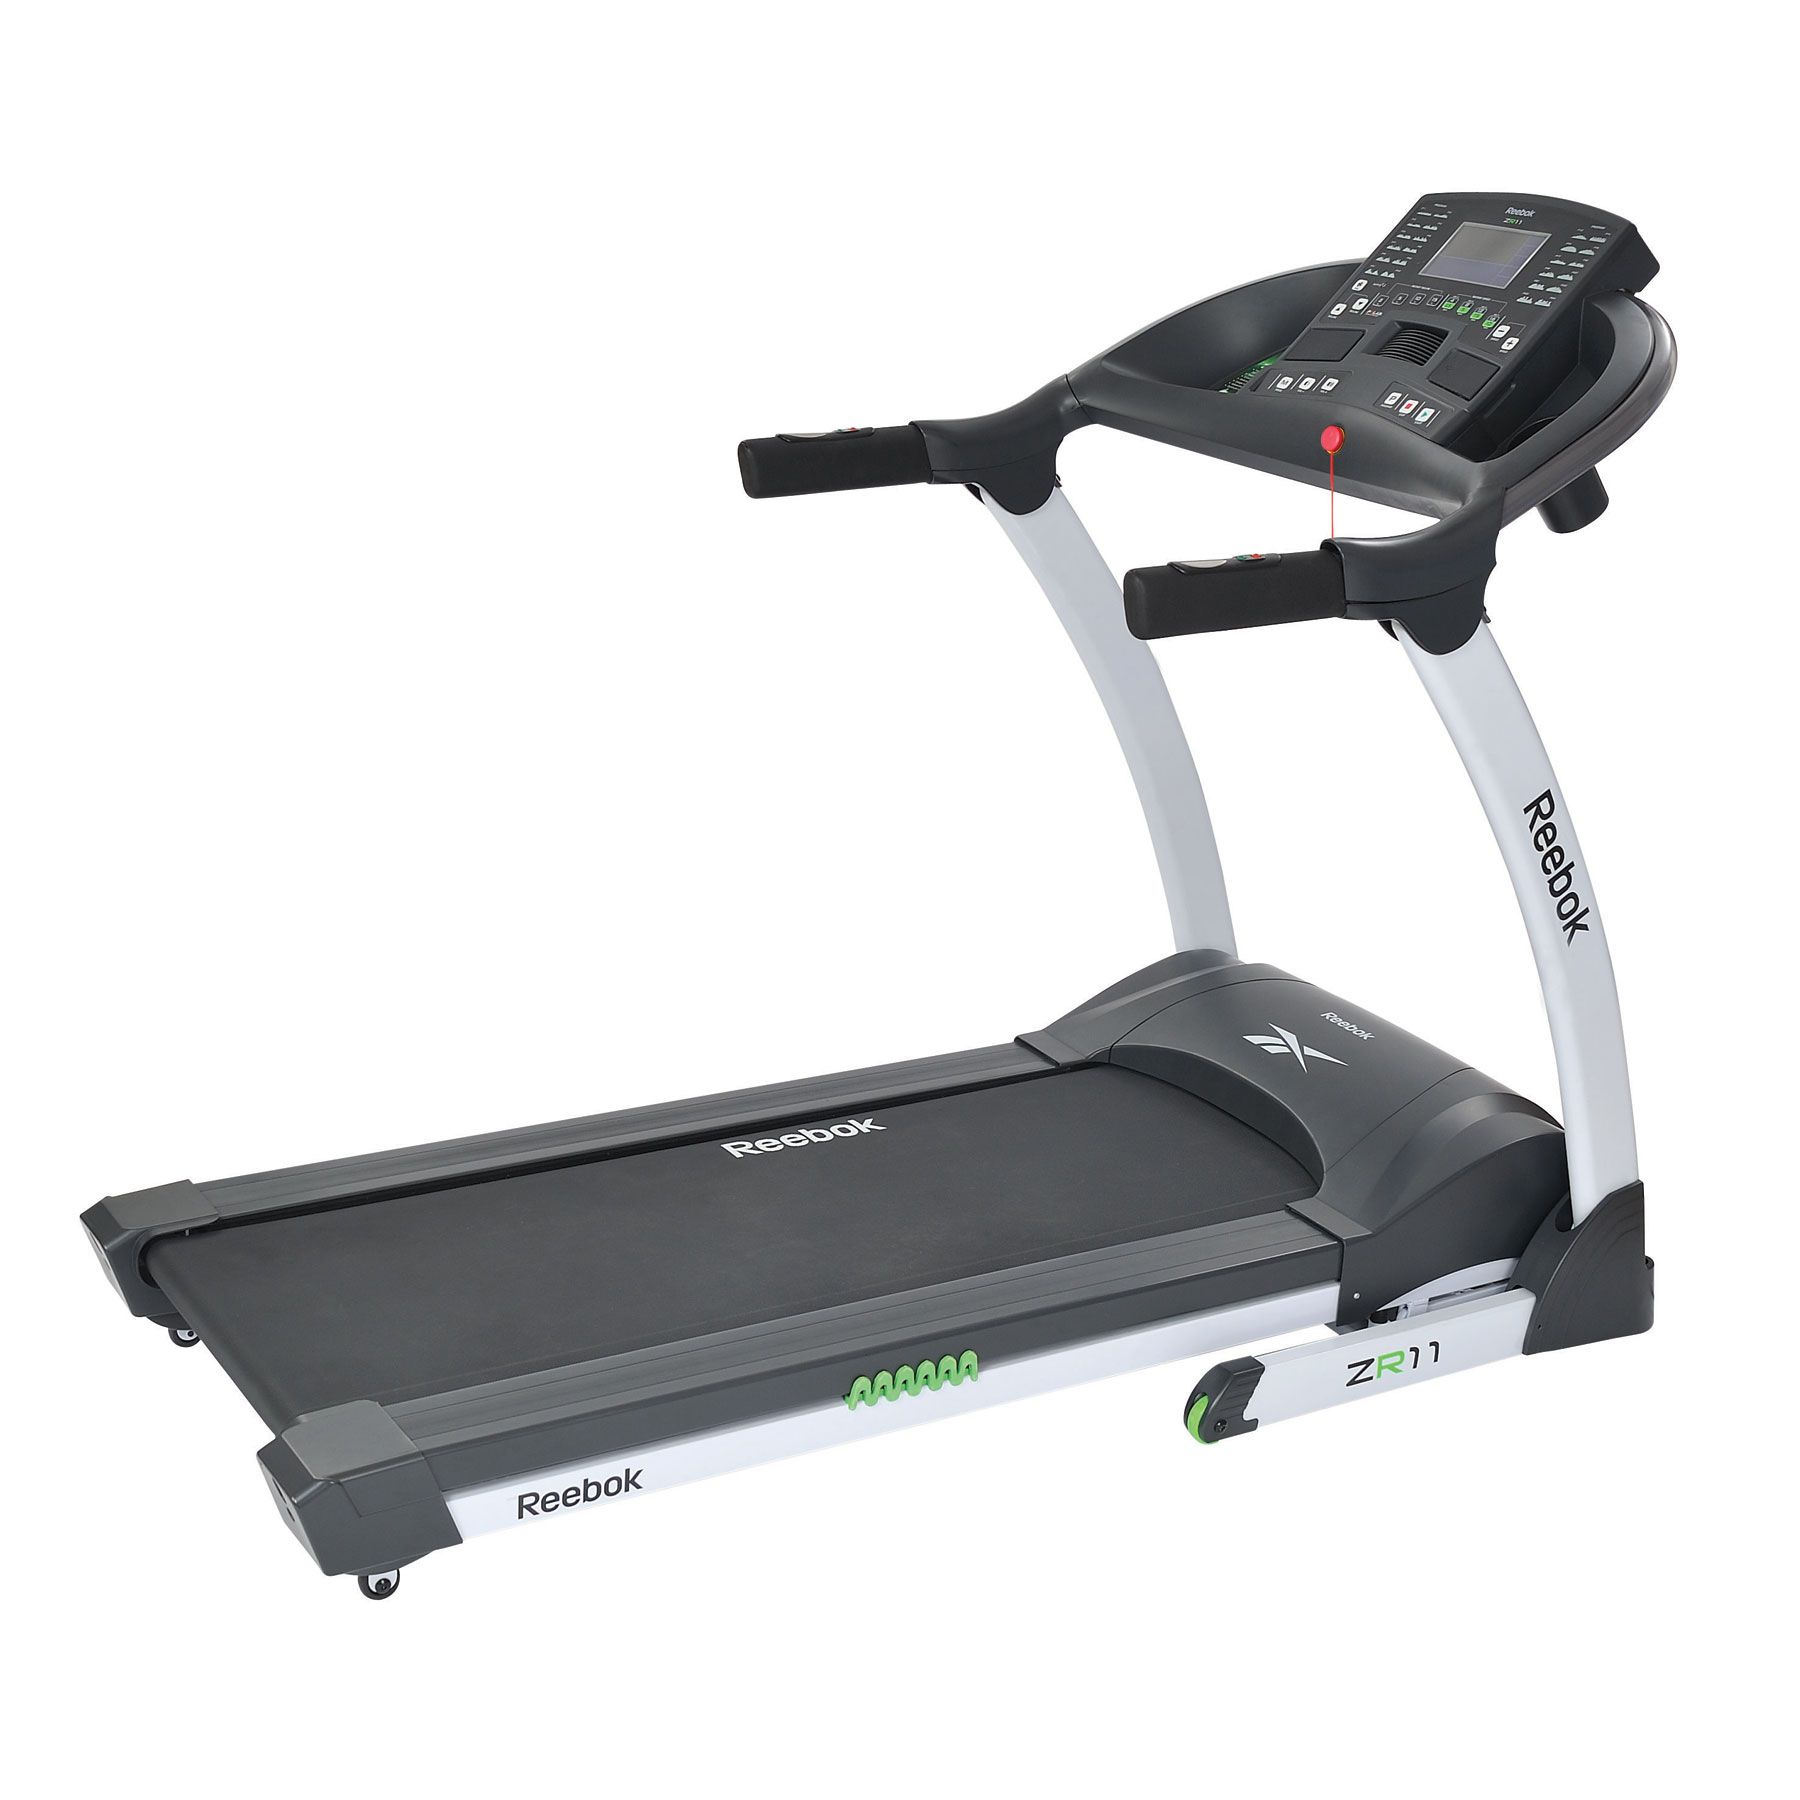 Reebok ZR11 Treadmill 2.5HP - FitOne.com